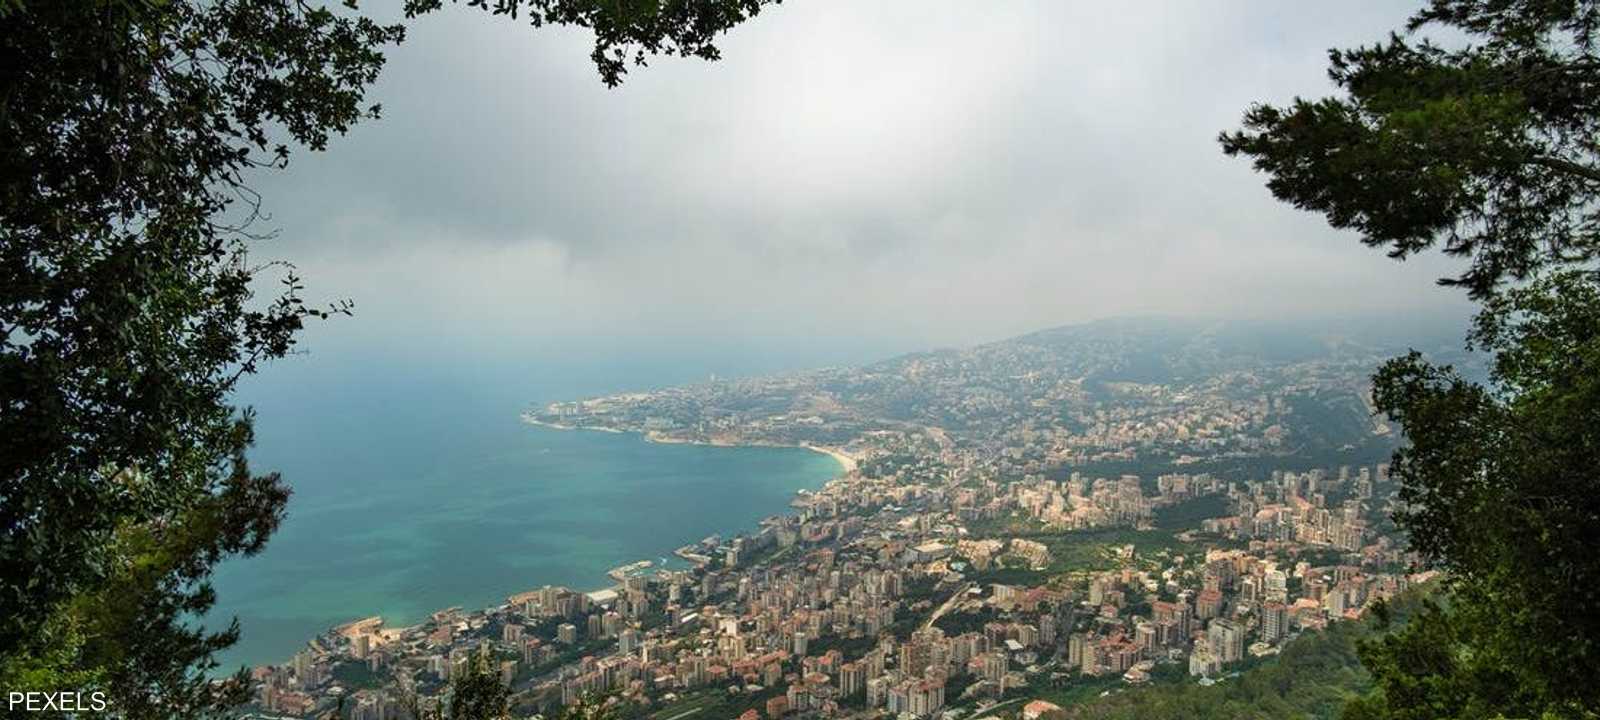 يتميز لبنان بغنى موارده المائية